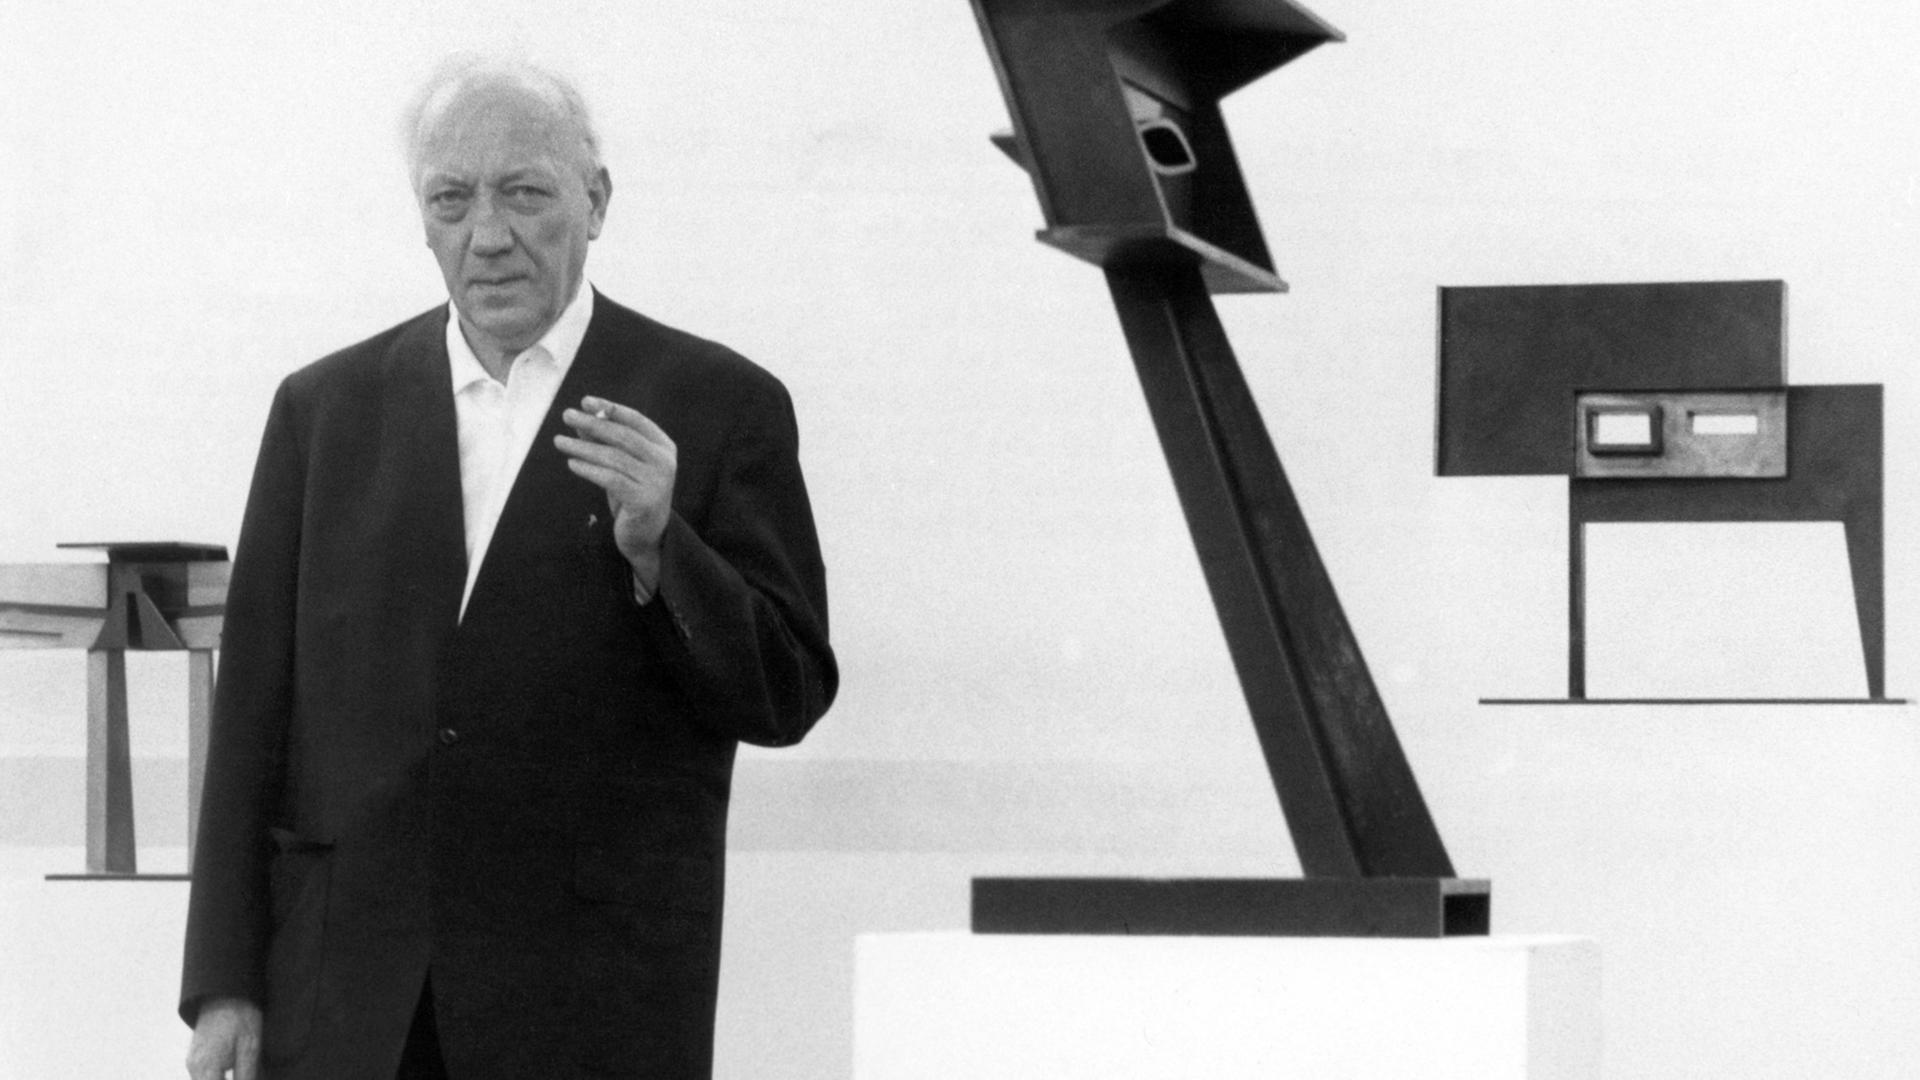 Der Bildhauer Hans Uhlmann neben seinen Plastiken "Fetisch 1963" und "Stahlplastik 1961" am 15.03.1968 in der Akademie der Künste in Berlin.